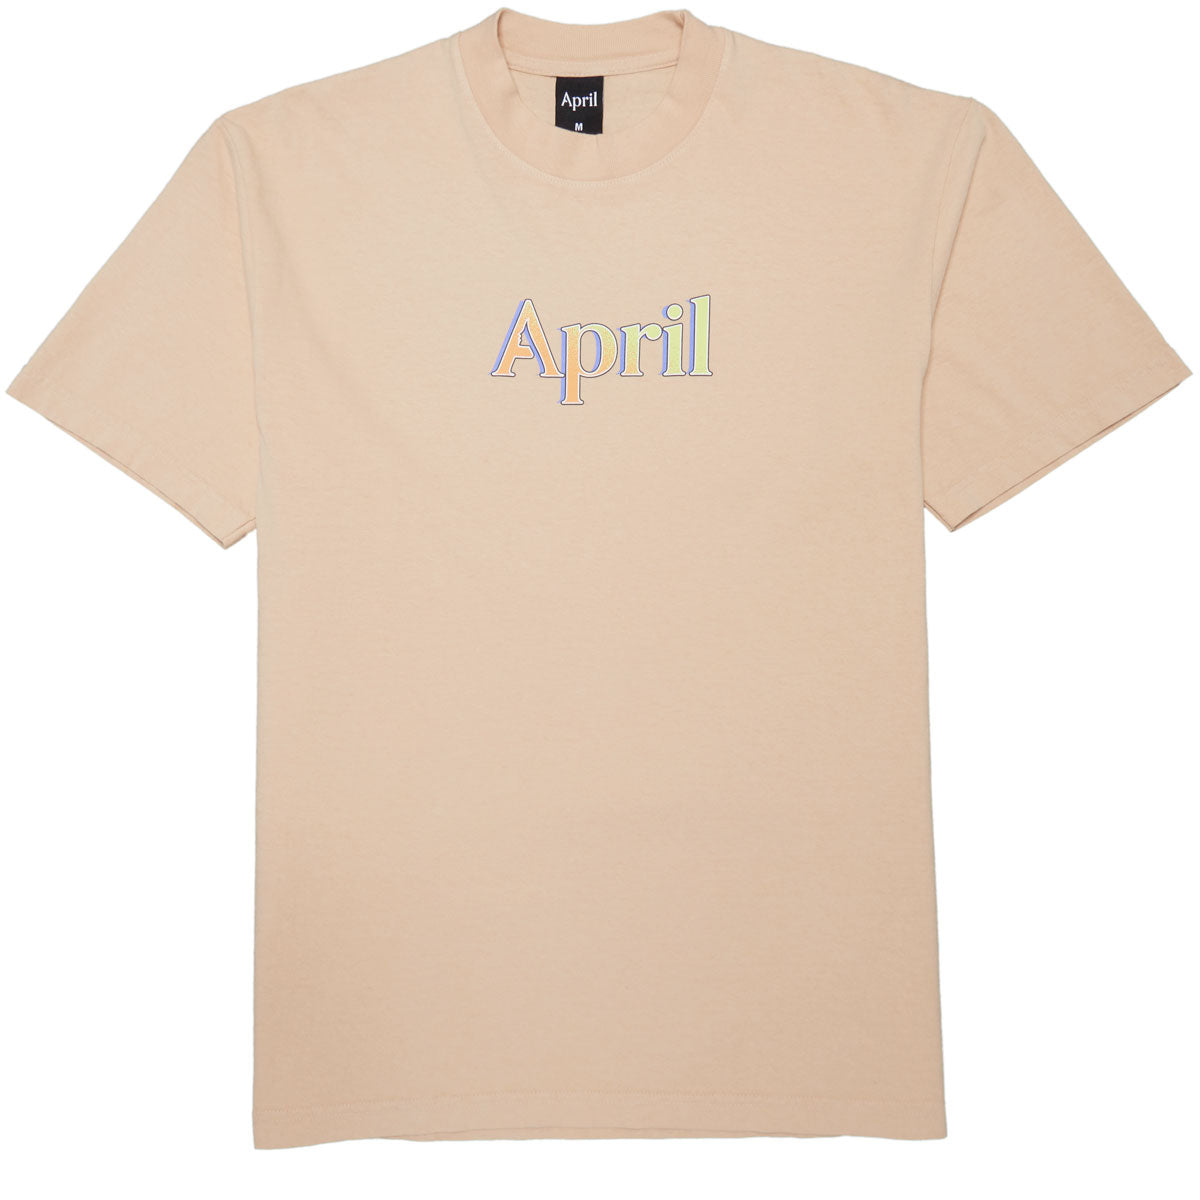 April AP 3000 T-Shirt - Beige image 2